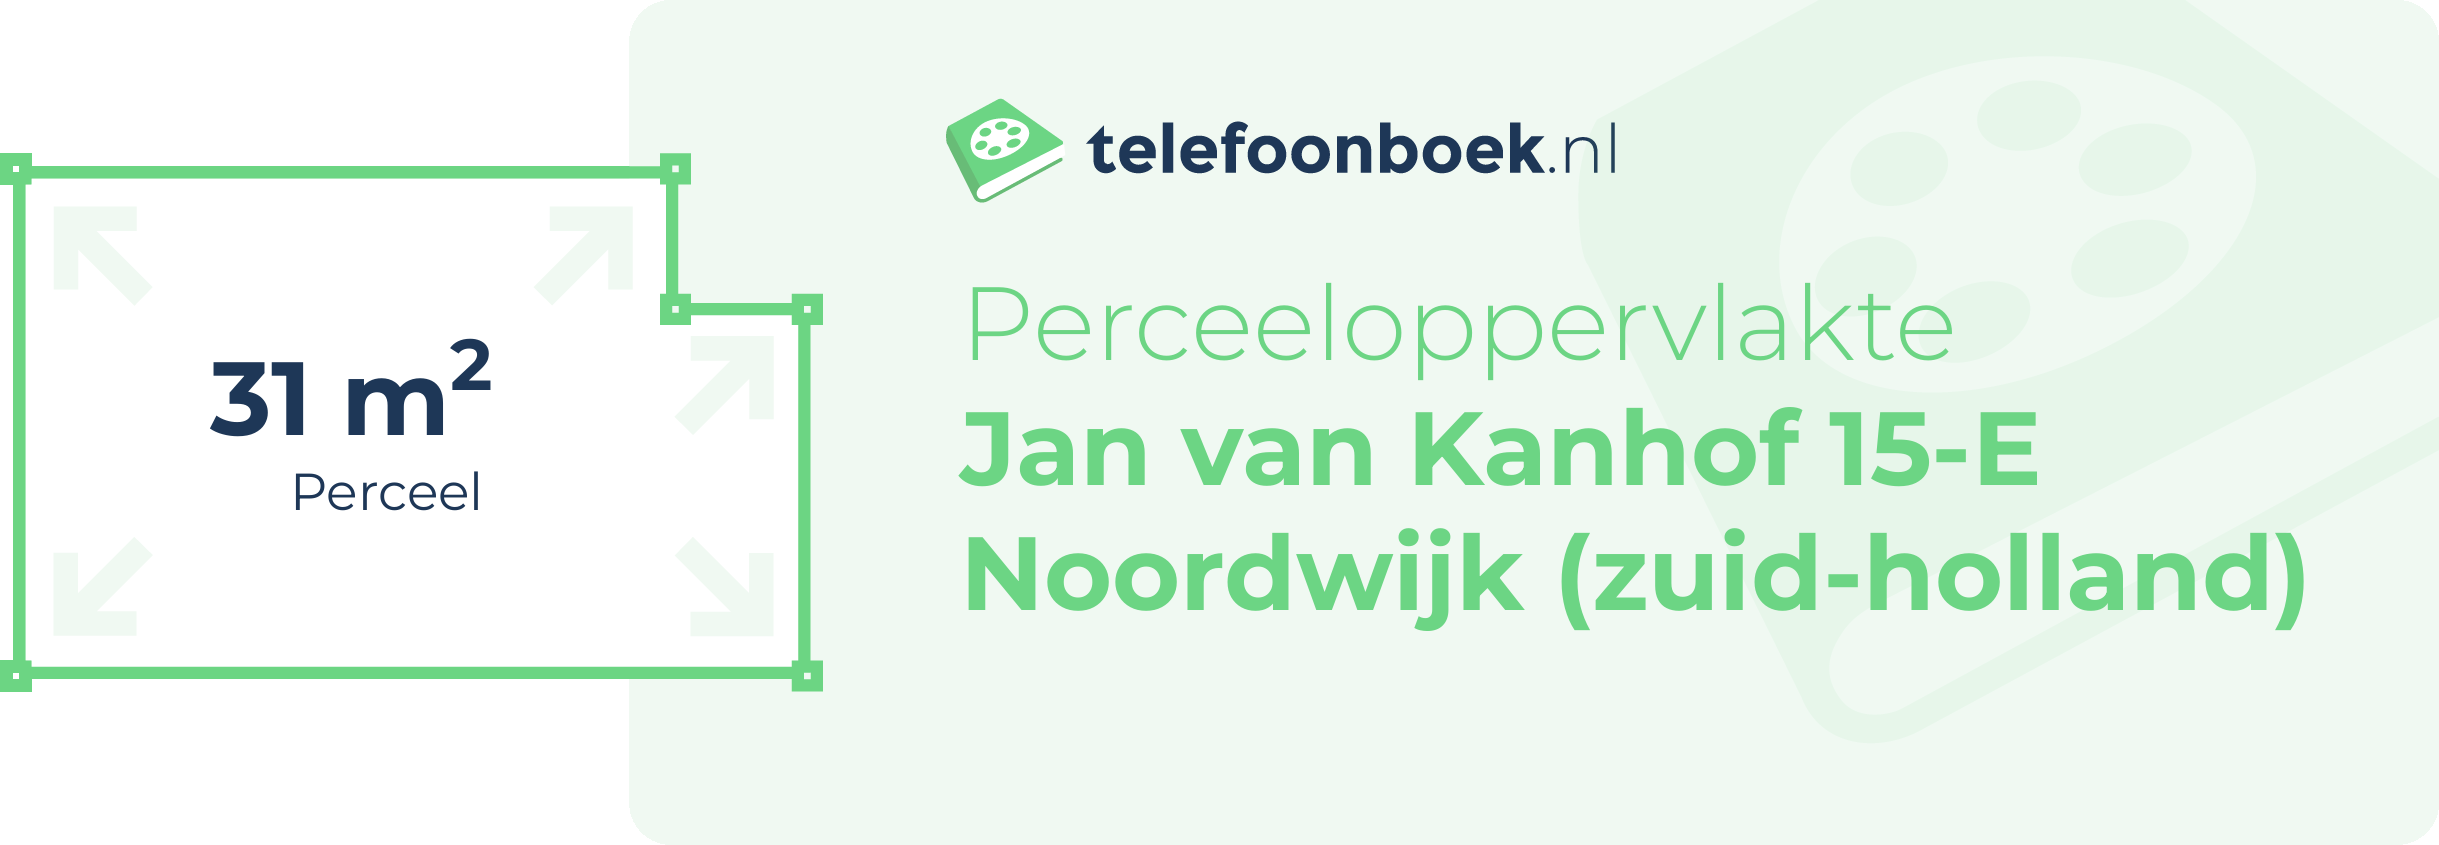 Perceeloppervlakte Jan Van Kanhof 15-E Noordwijk (Zuid-Holland)